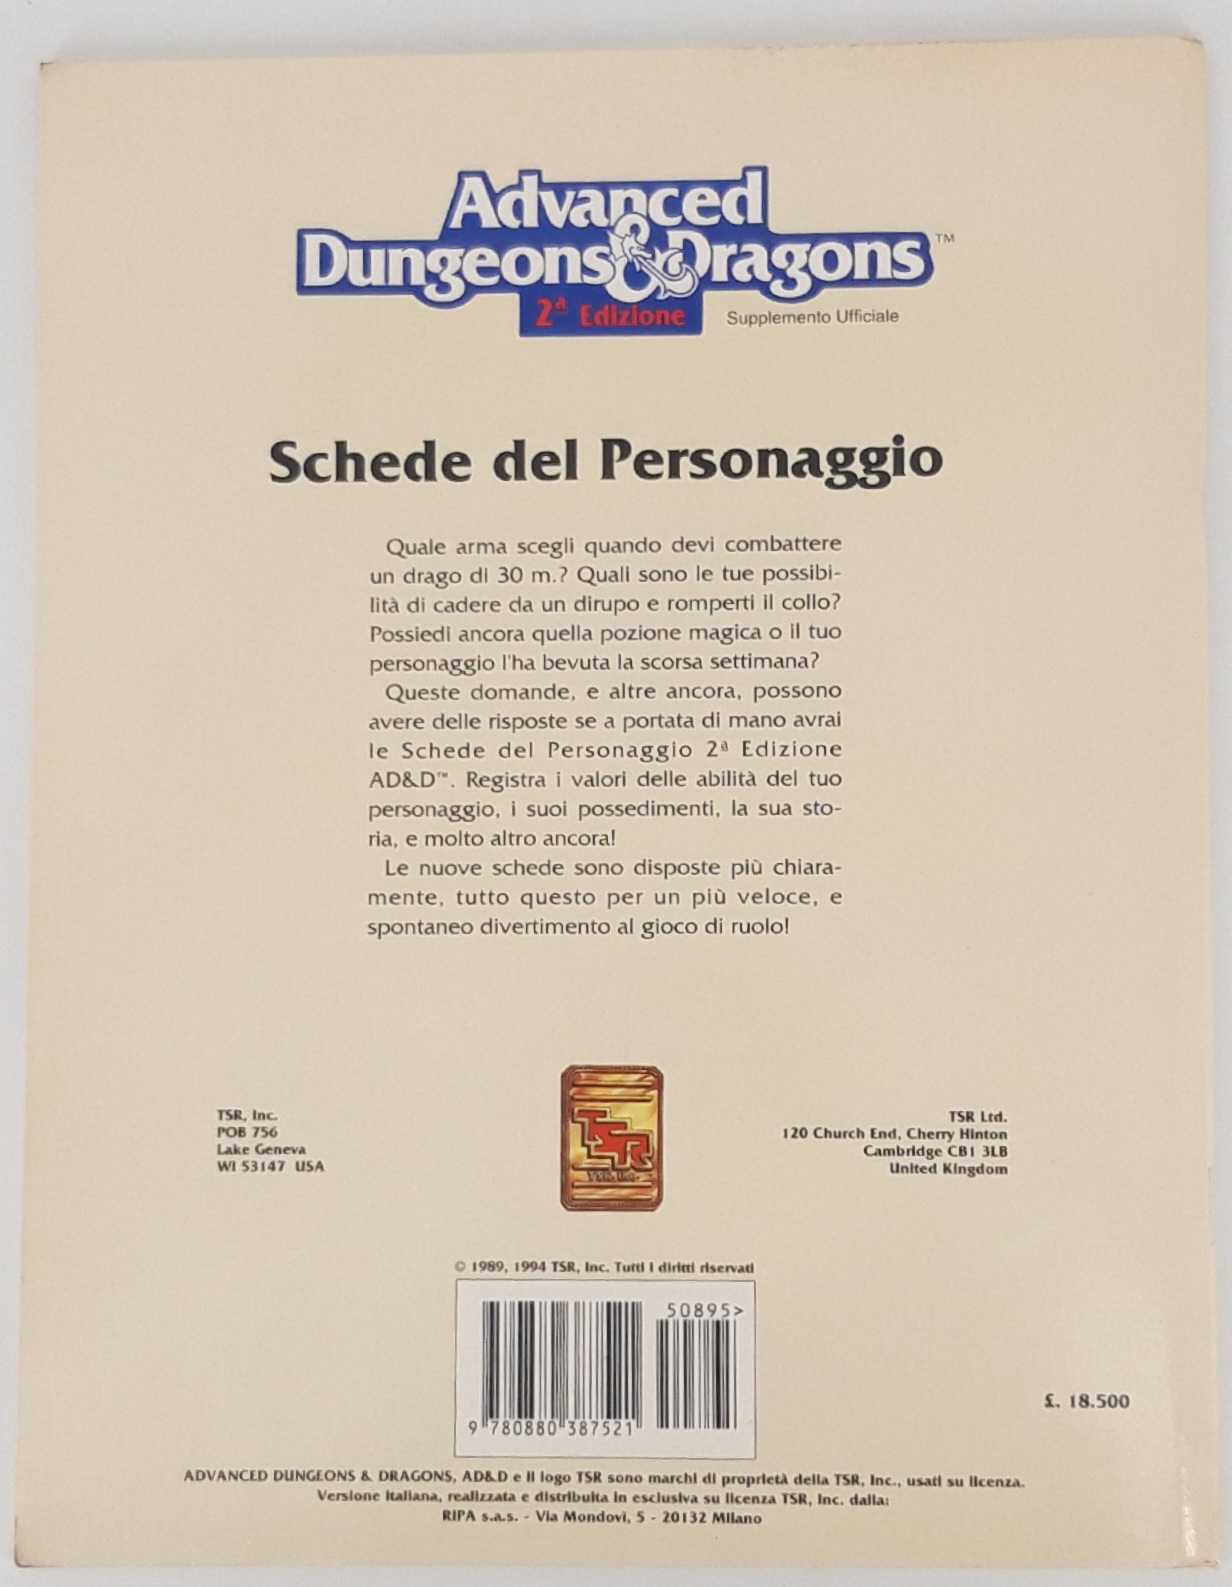 Advanced Dungeon and Dragons 2 edizione schede del personaggio